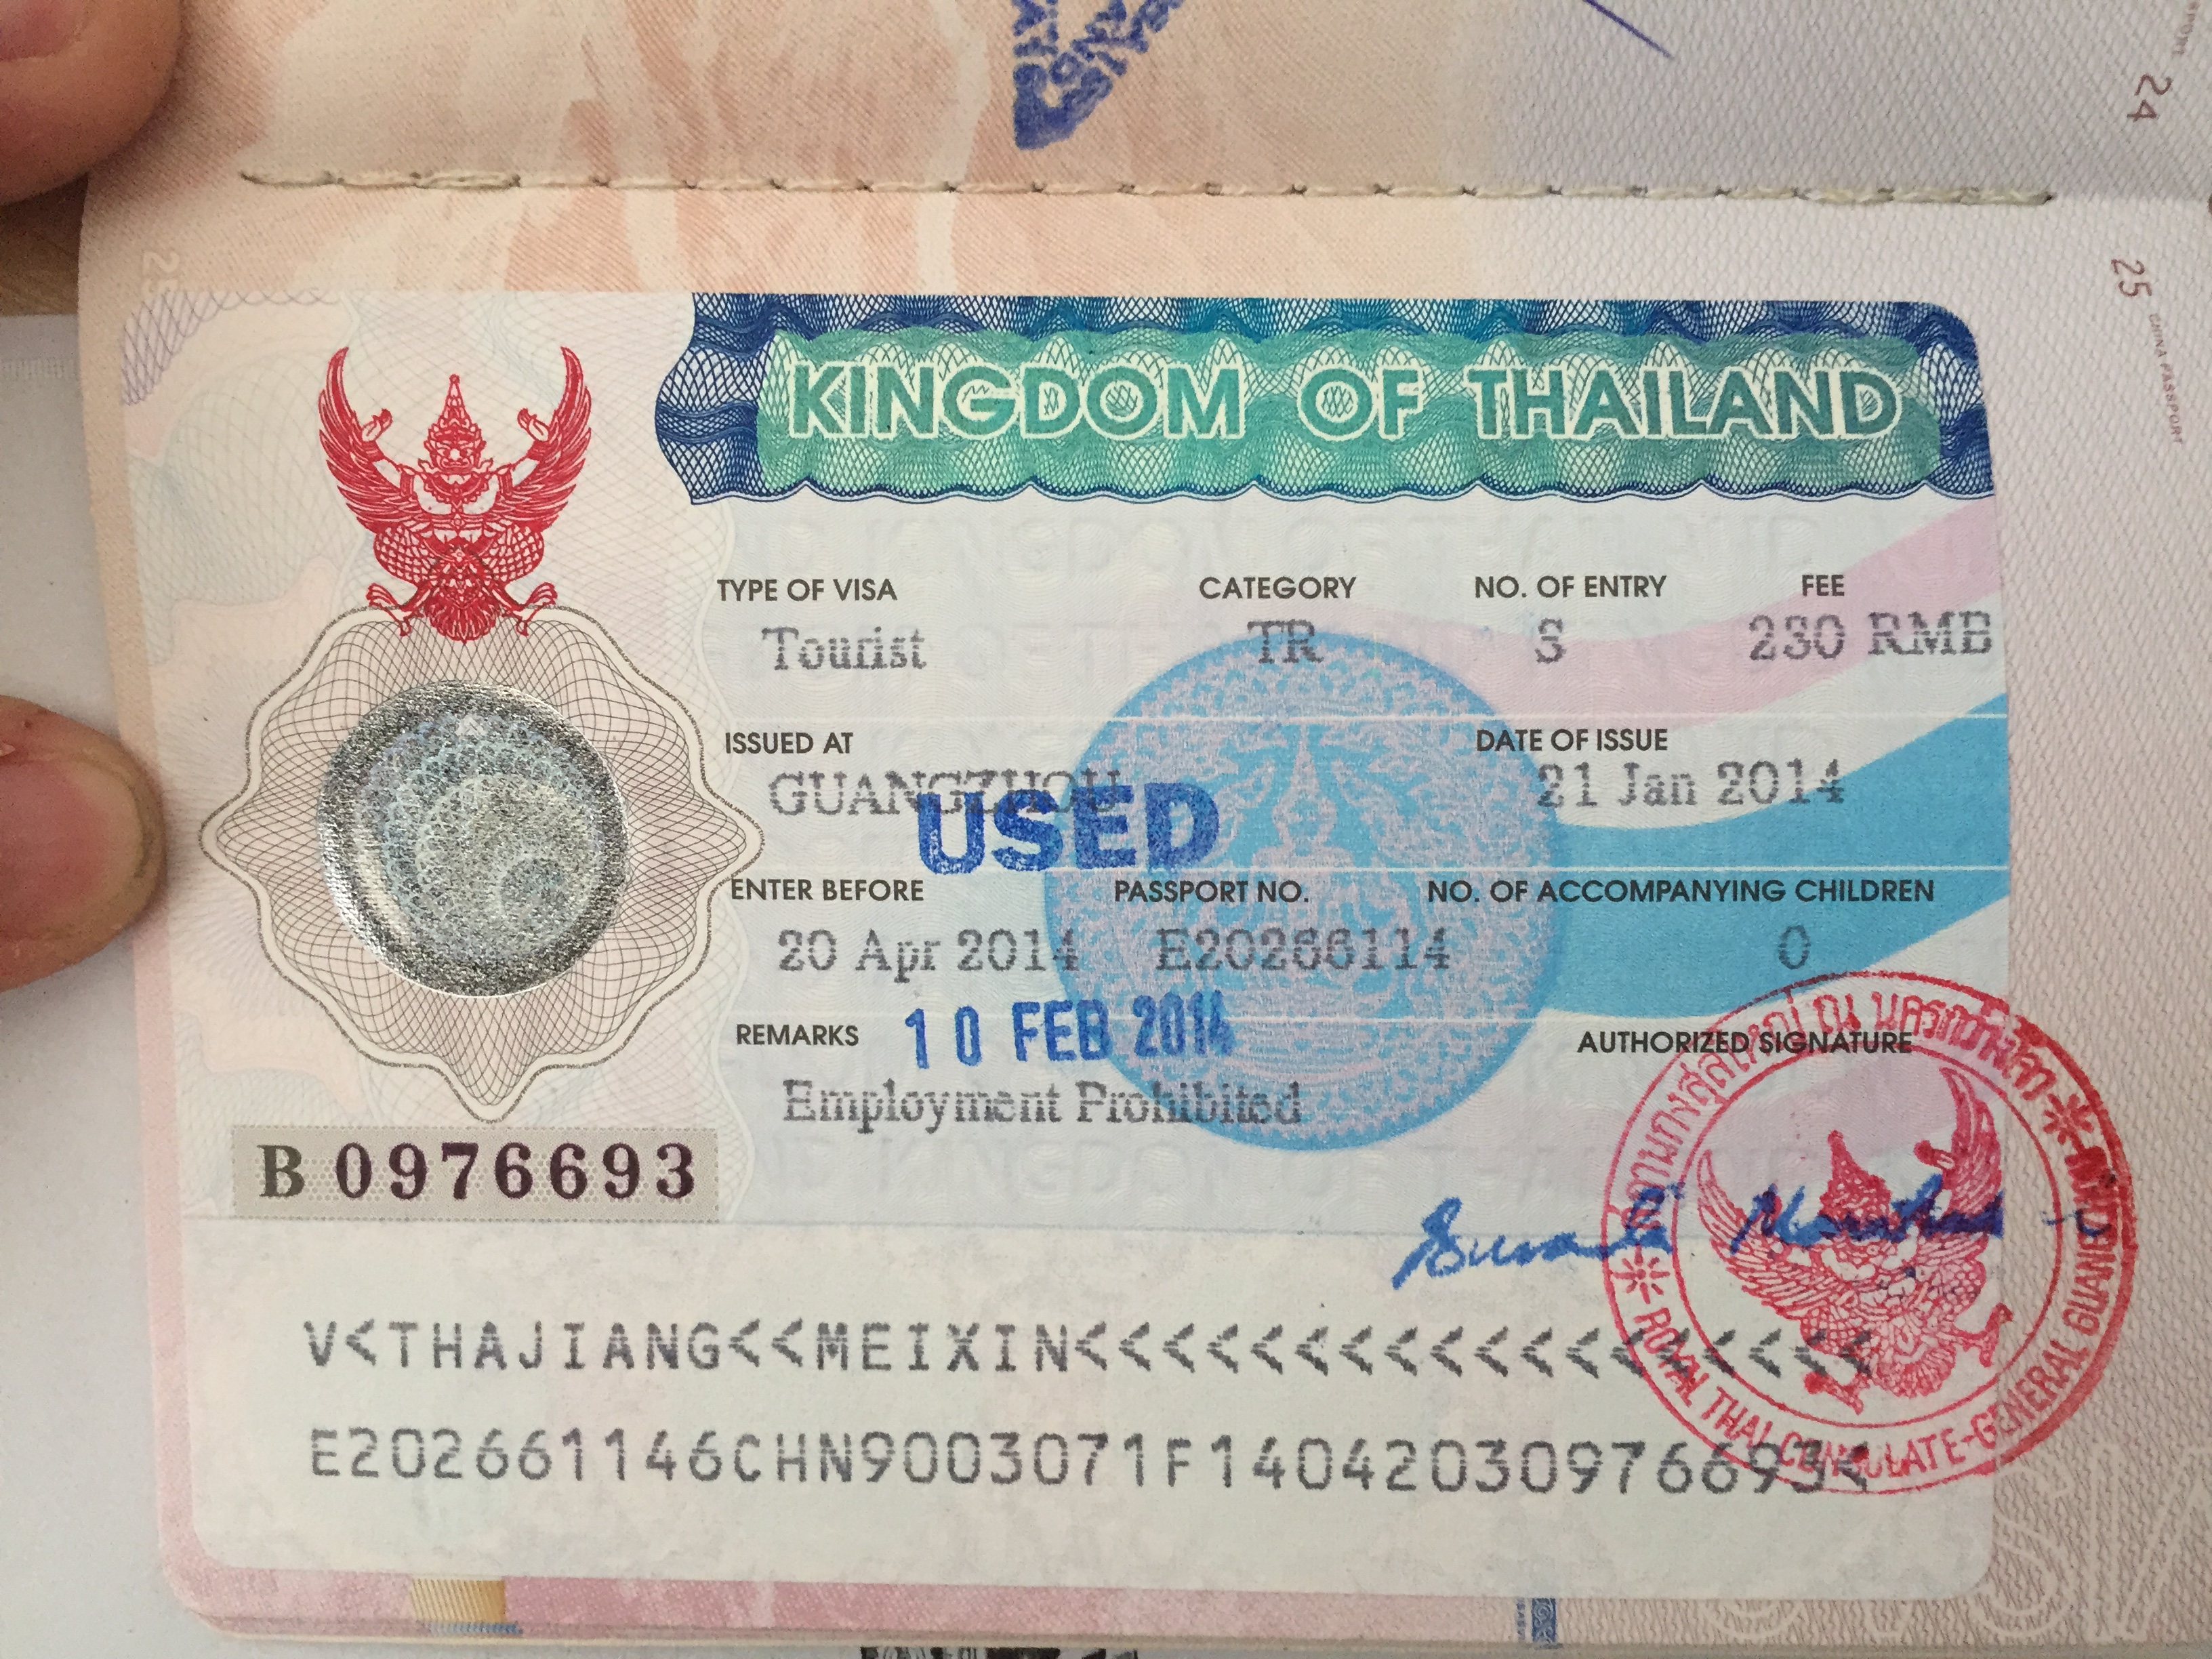 二,到泰国之后再申请办理落地签证这种方式比较灵活,大家由于没有